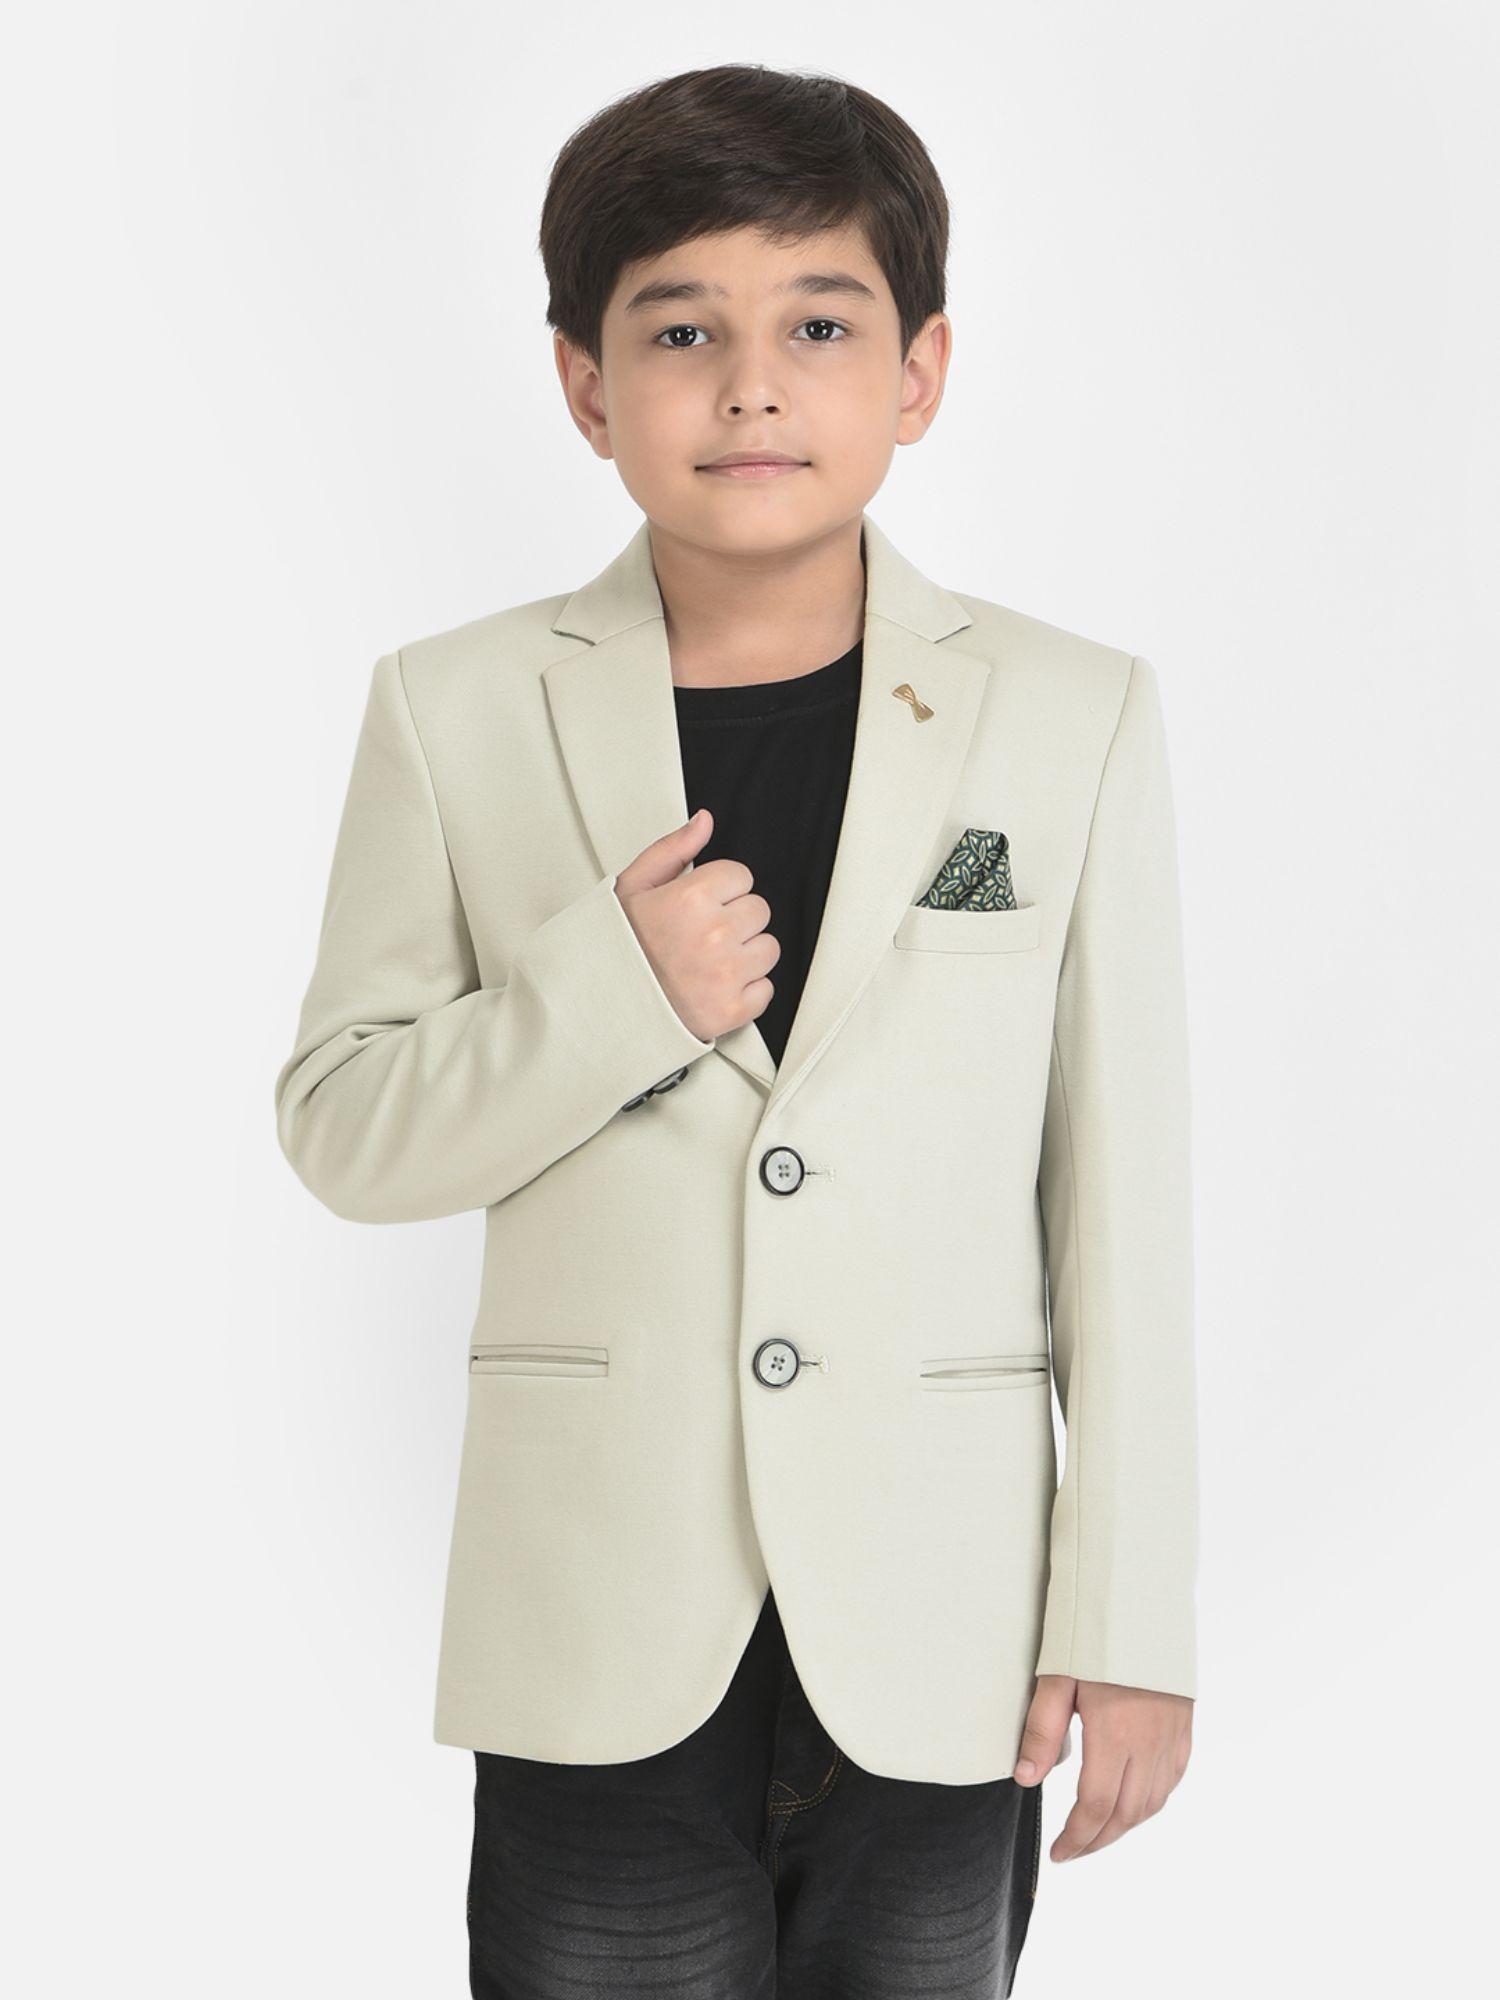 boy mint green blazer with 3 pocket styling